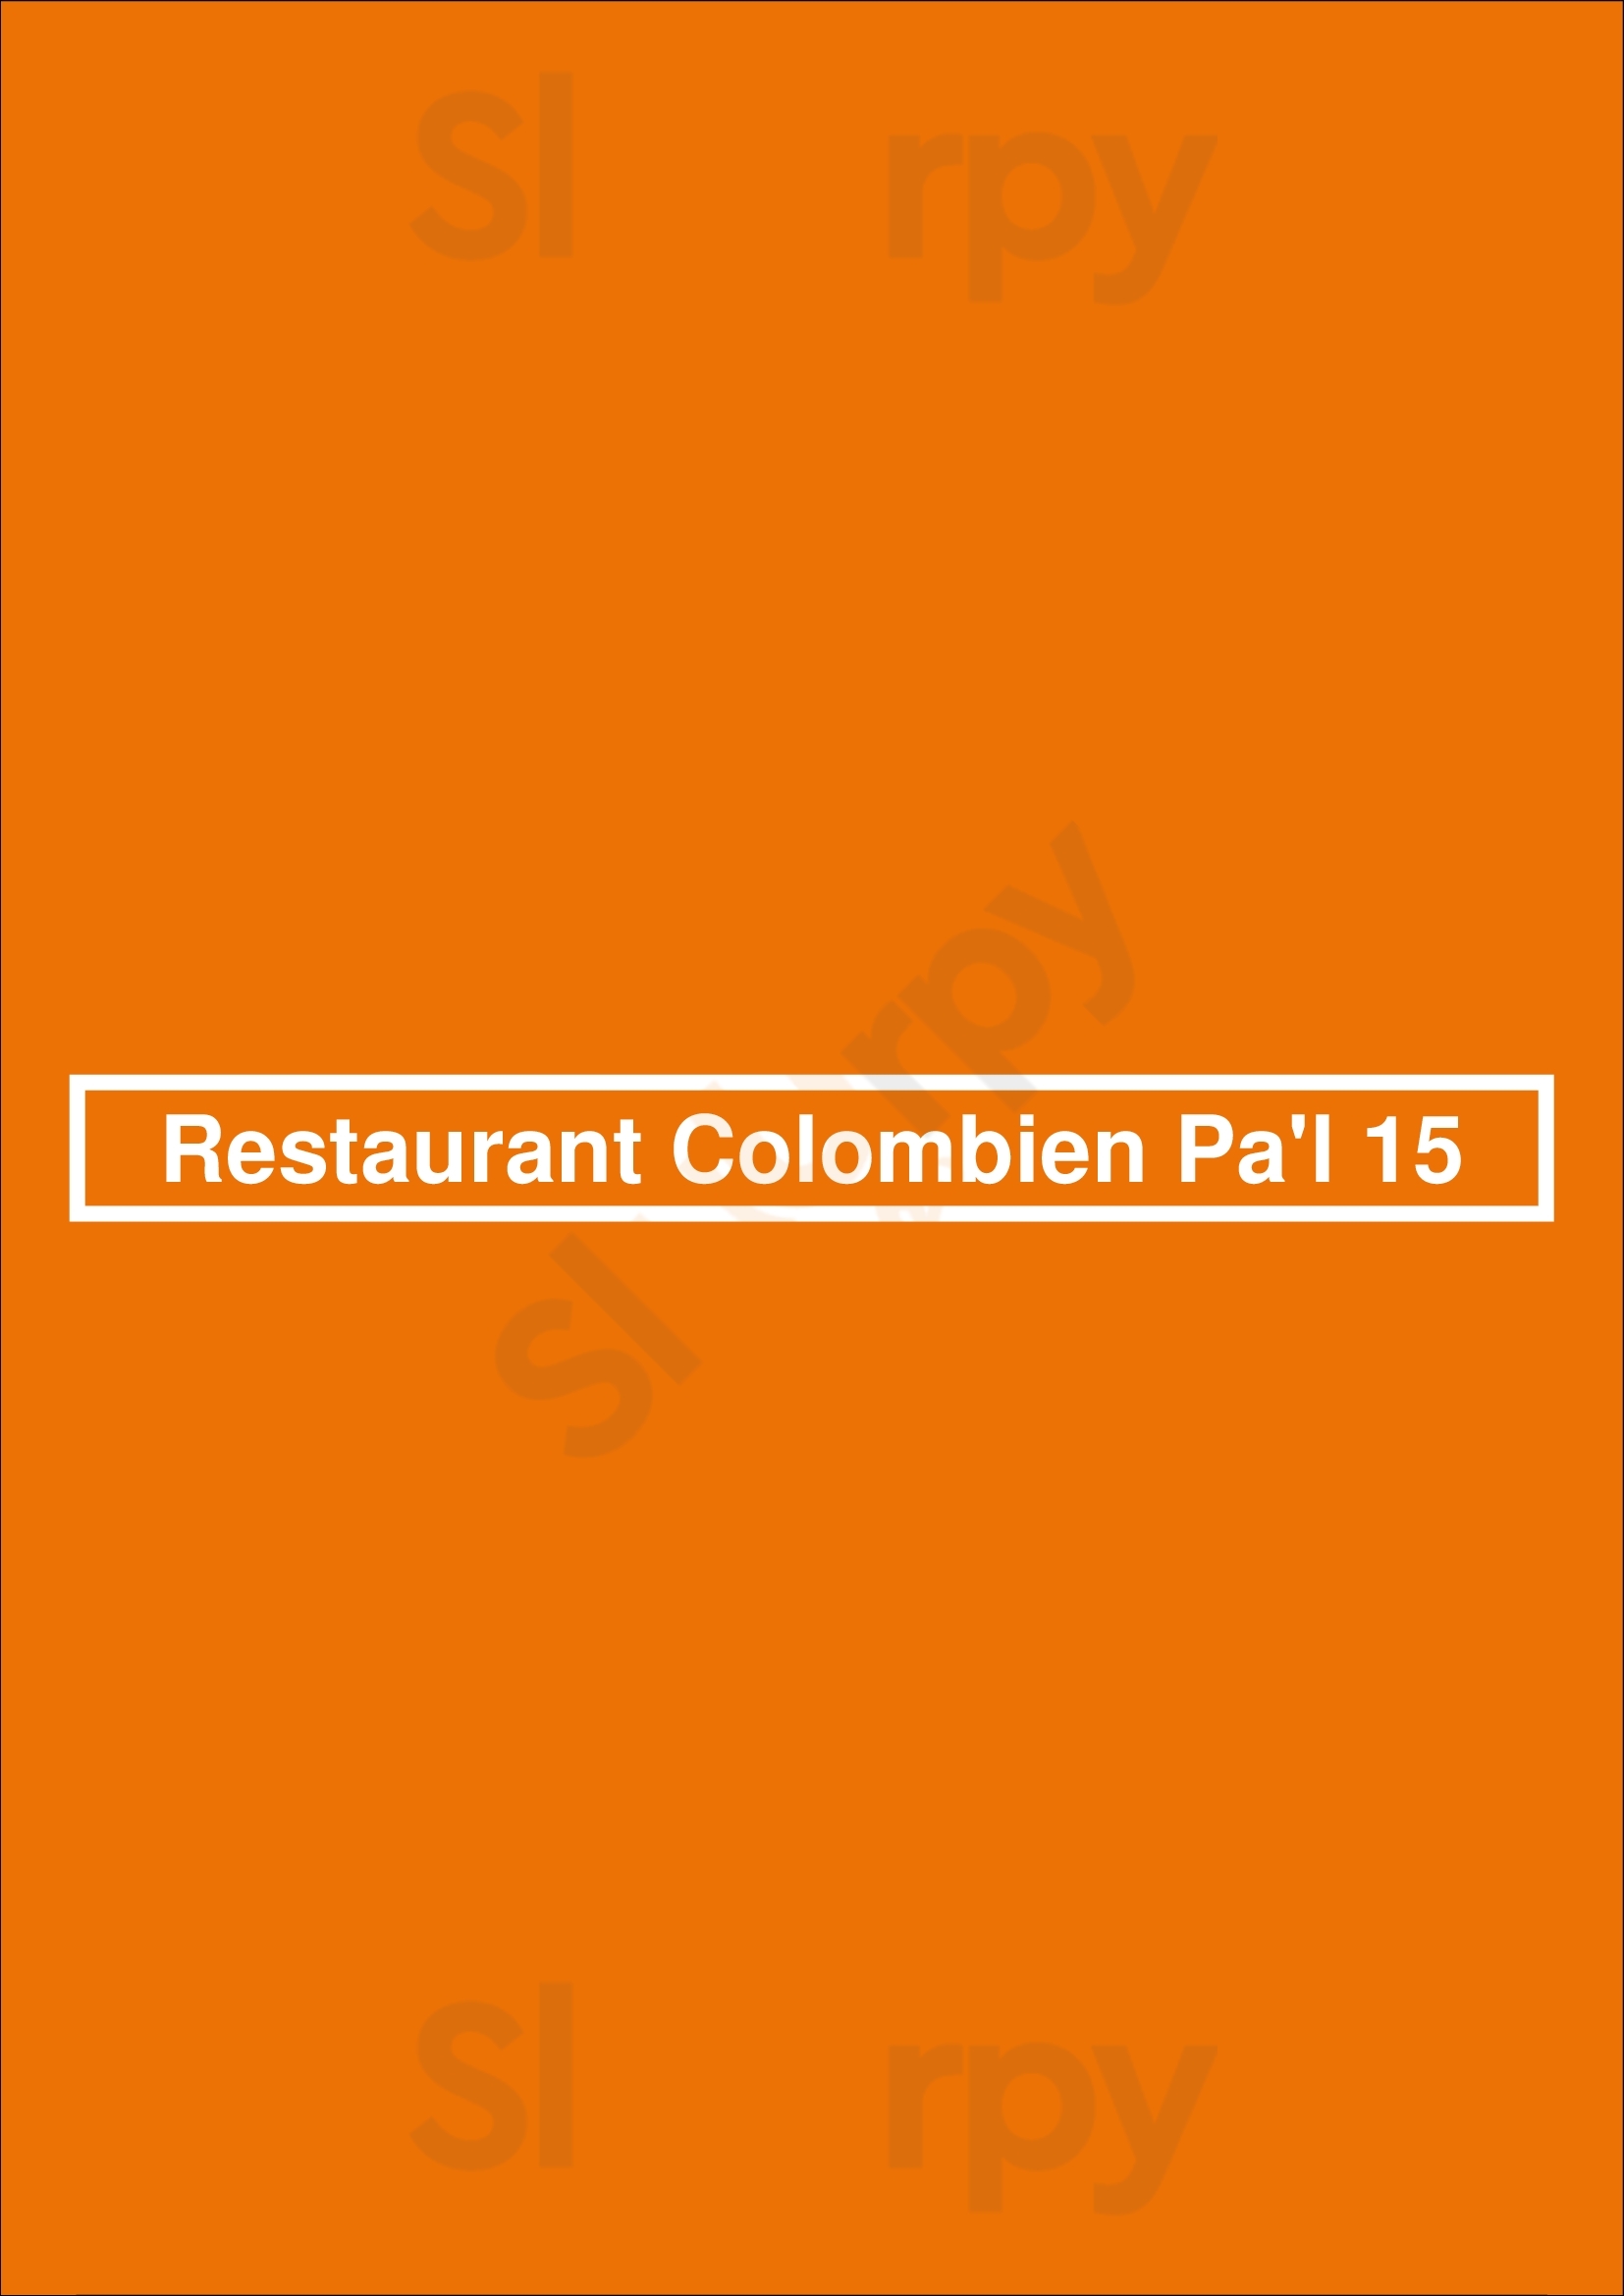 Restaurant Colombien Pa'l 15 Paris Menu - 1